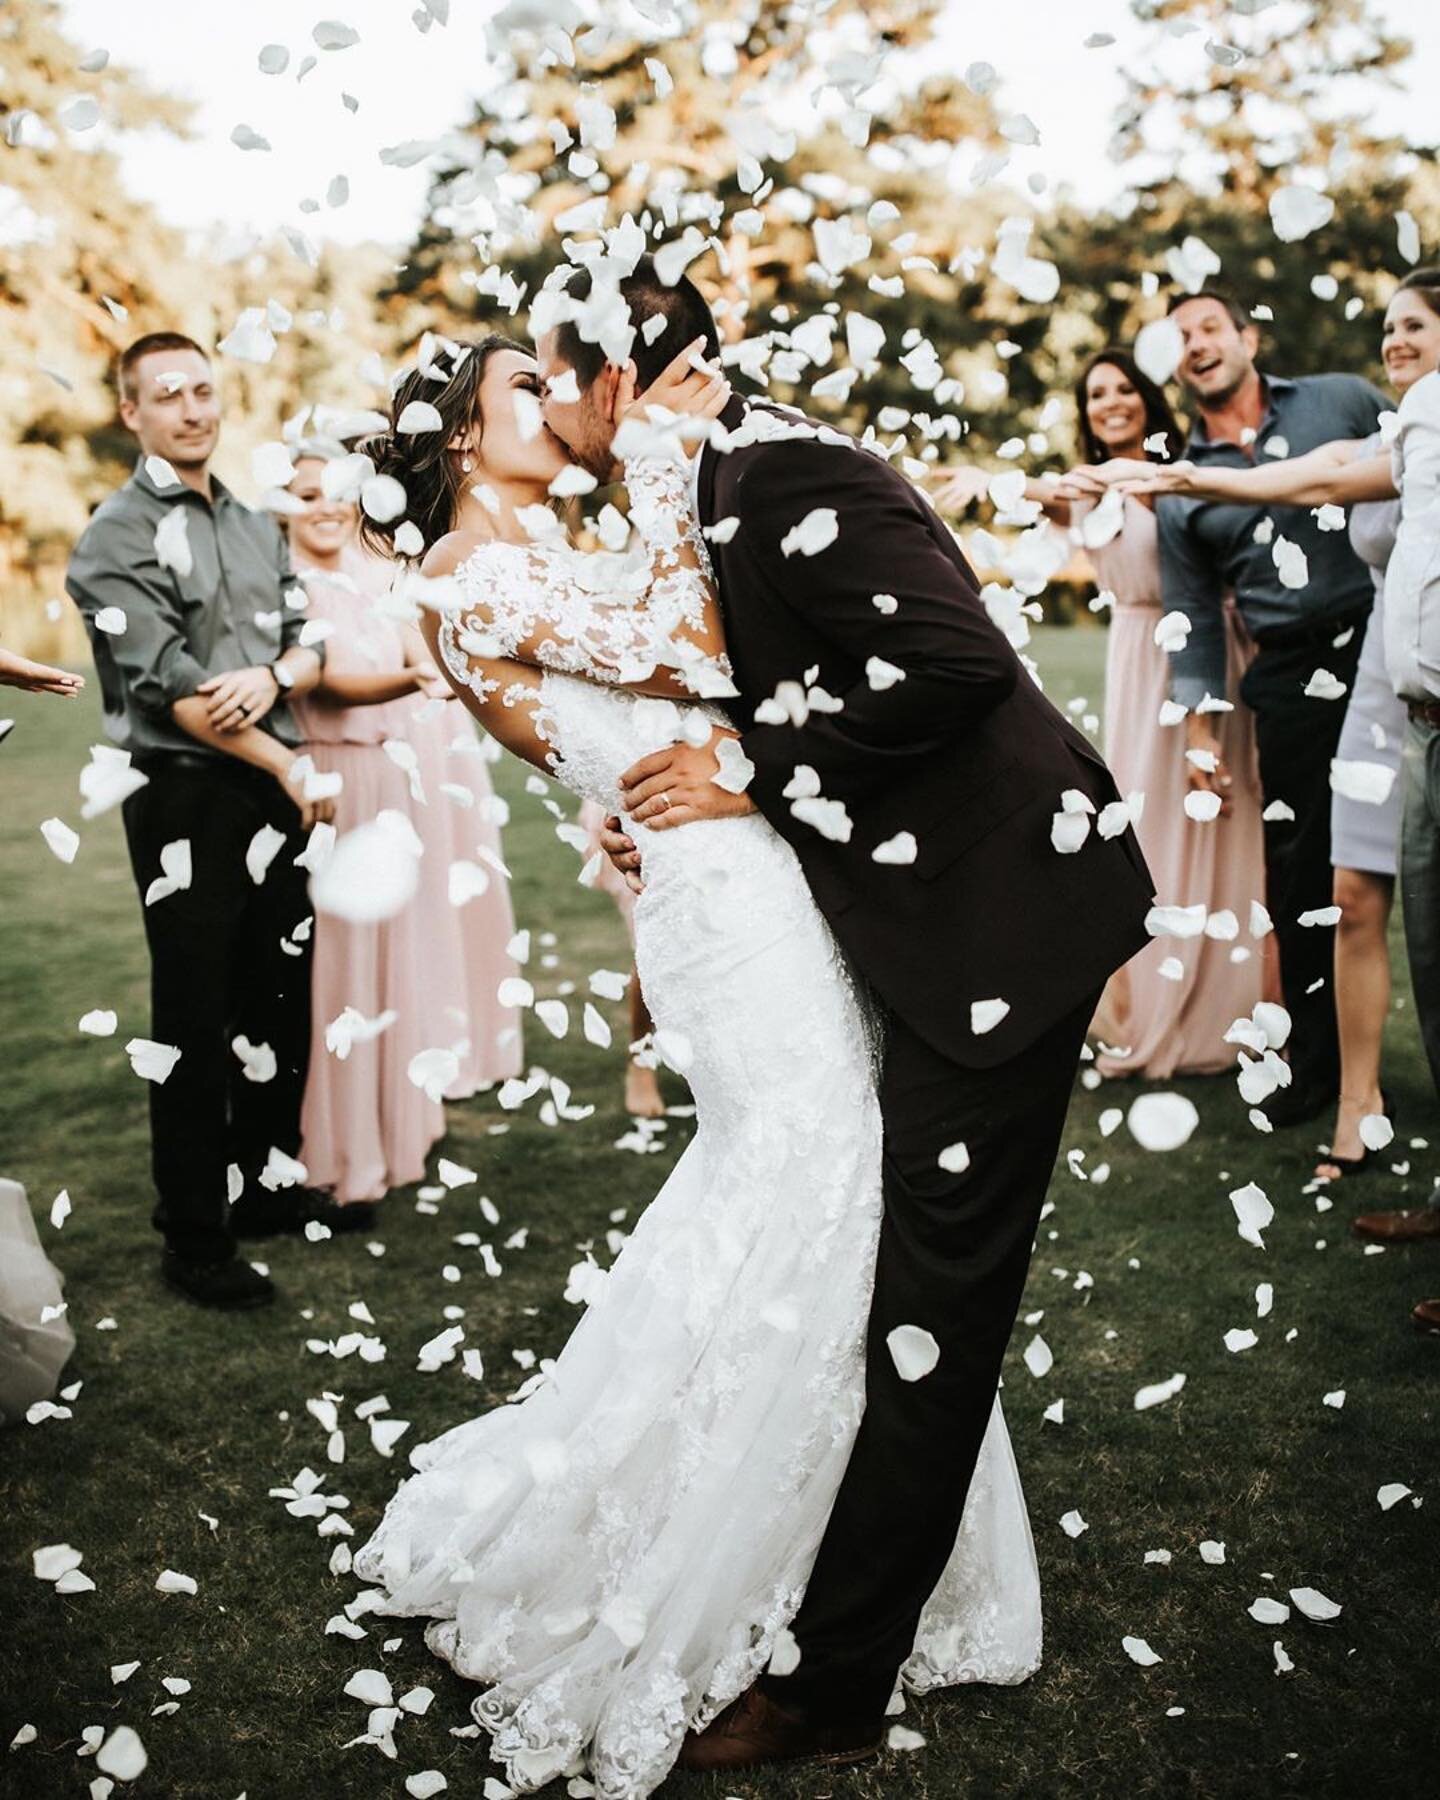 2020 didn&rsquo;t stop this wedding celebration! 🎊😍🎉 @beautyasylum_atlanta #beautyasylum @bridal_by_chelsea #beautyasylum_chelsea 📸 @katelynkingphotographyllc  @daisyhillvenue